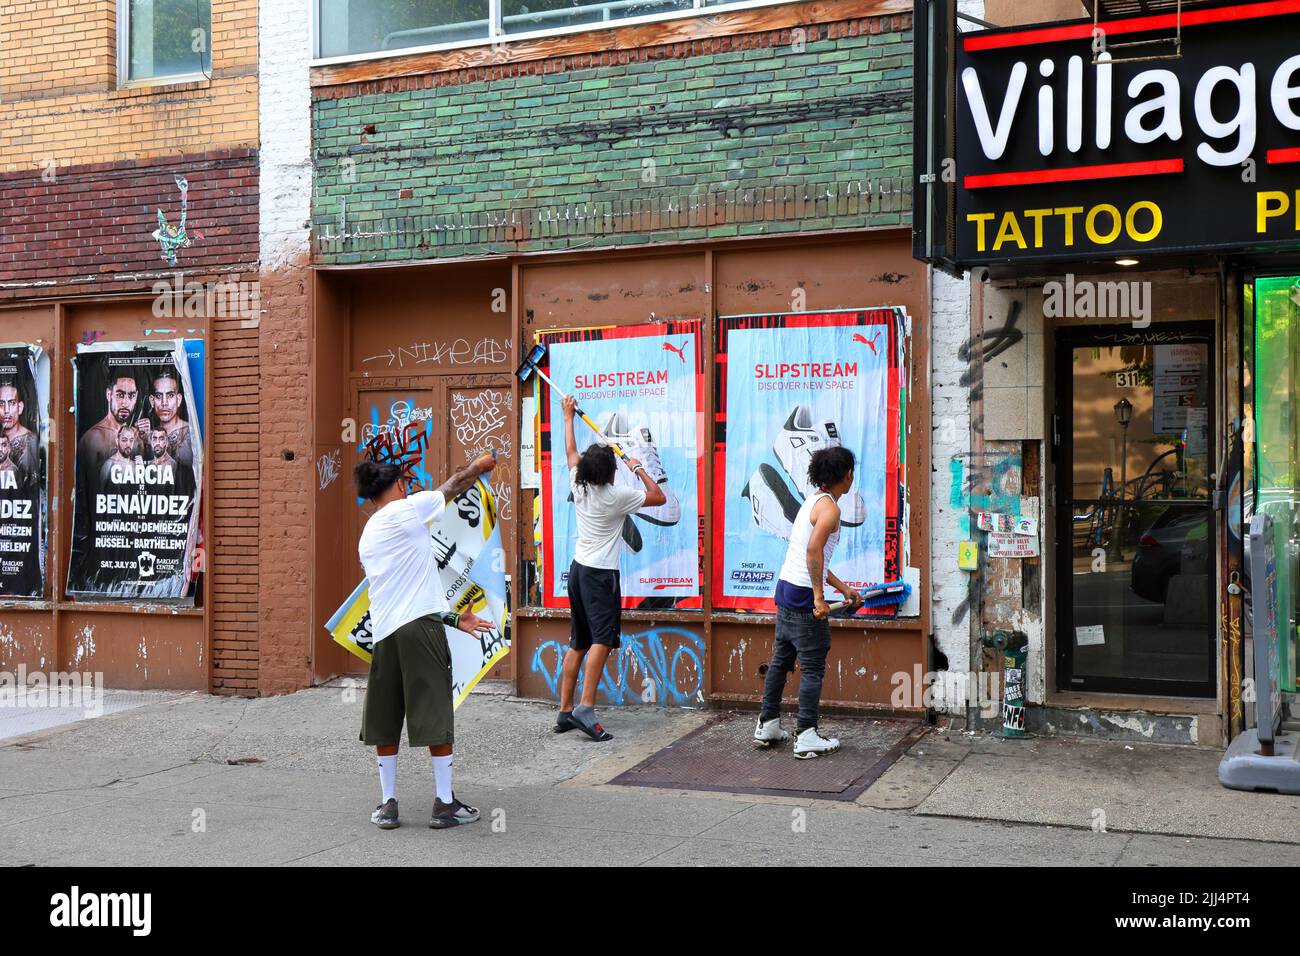 Persone che sbatte poster pubblicitari su un muro, o pubblicità di pubblicazione selvaggia, come parte di una campagna di marketing urbano, a livello stradale, guerilla. Foto Stock